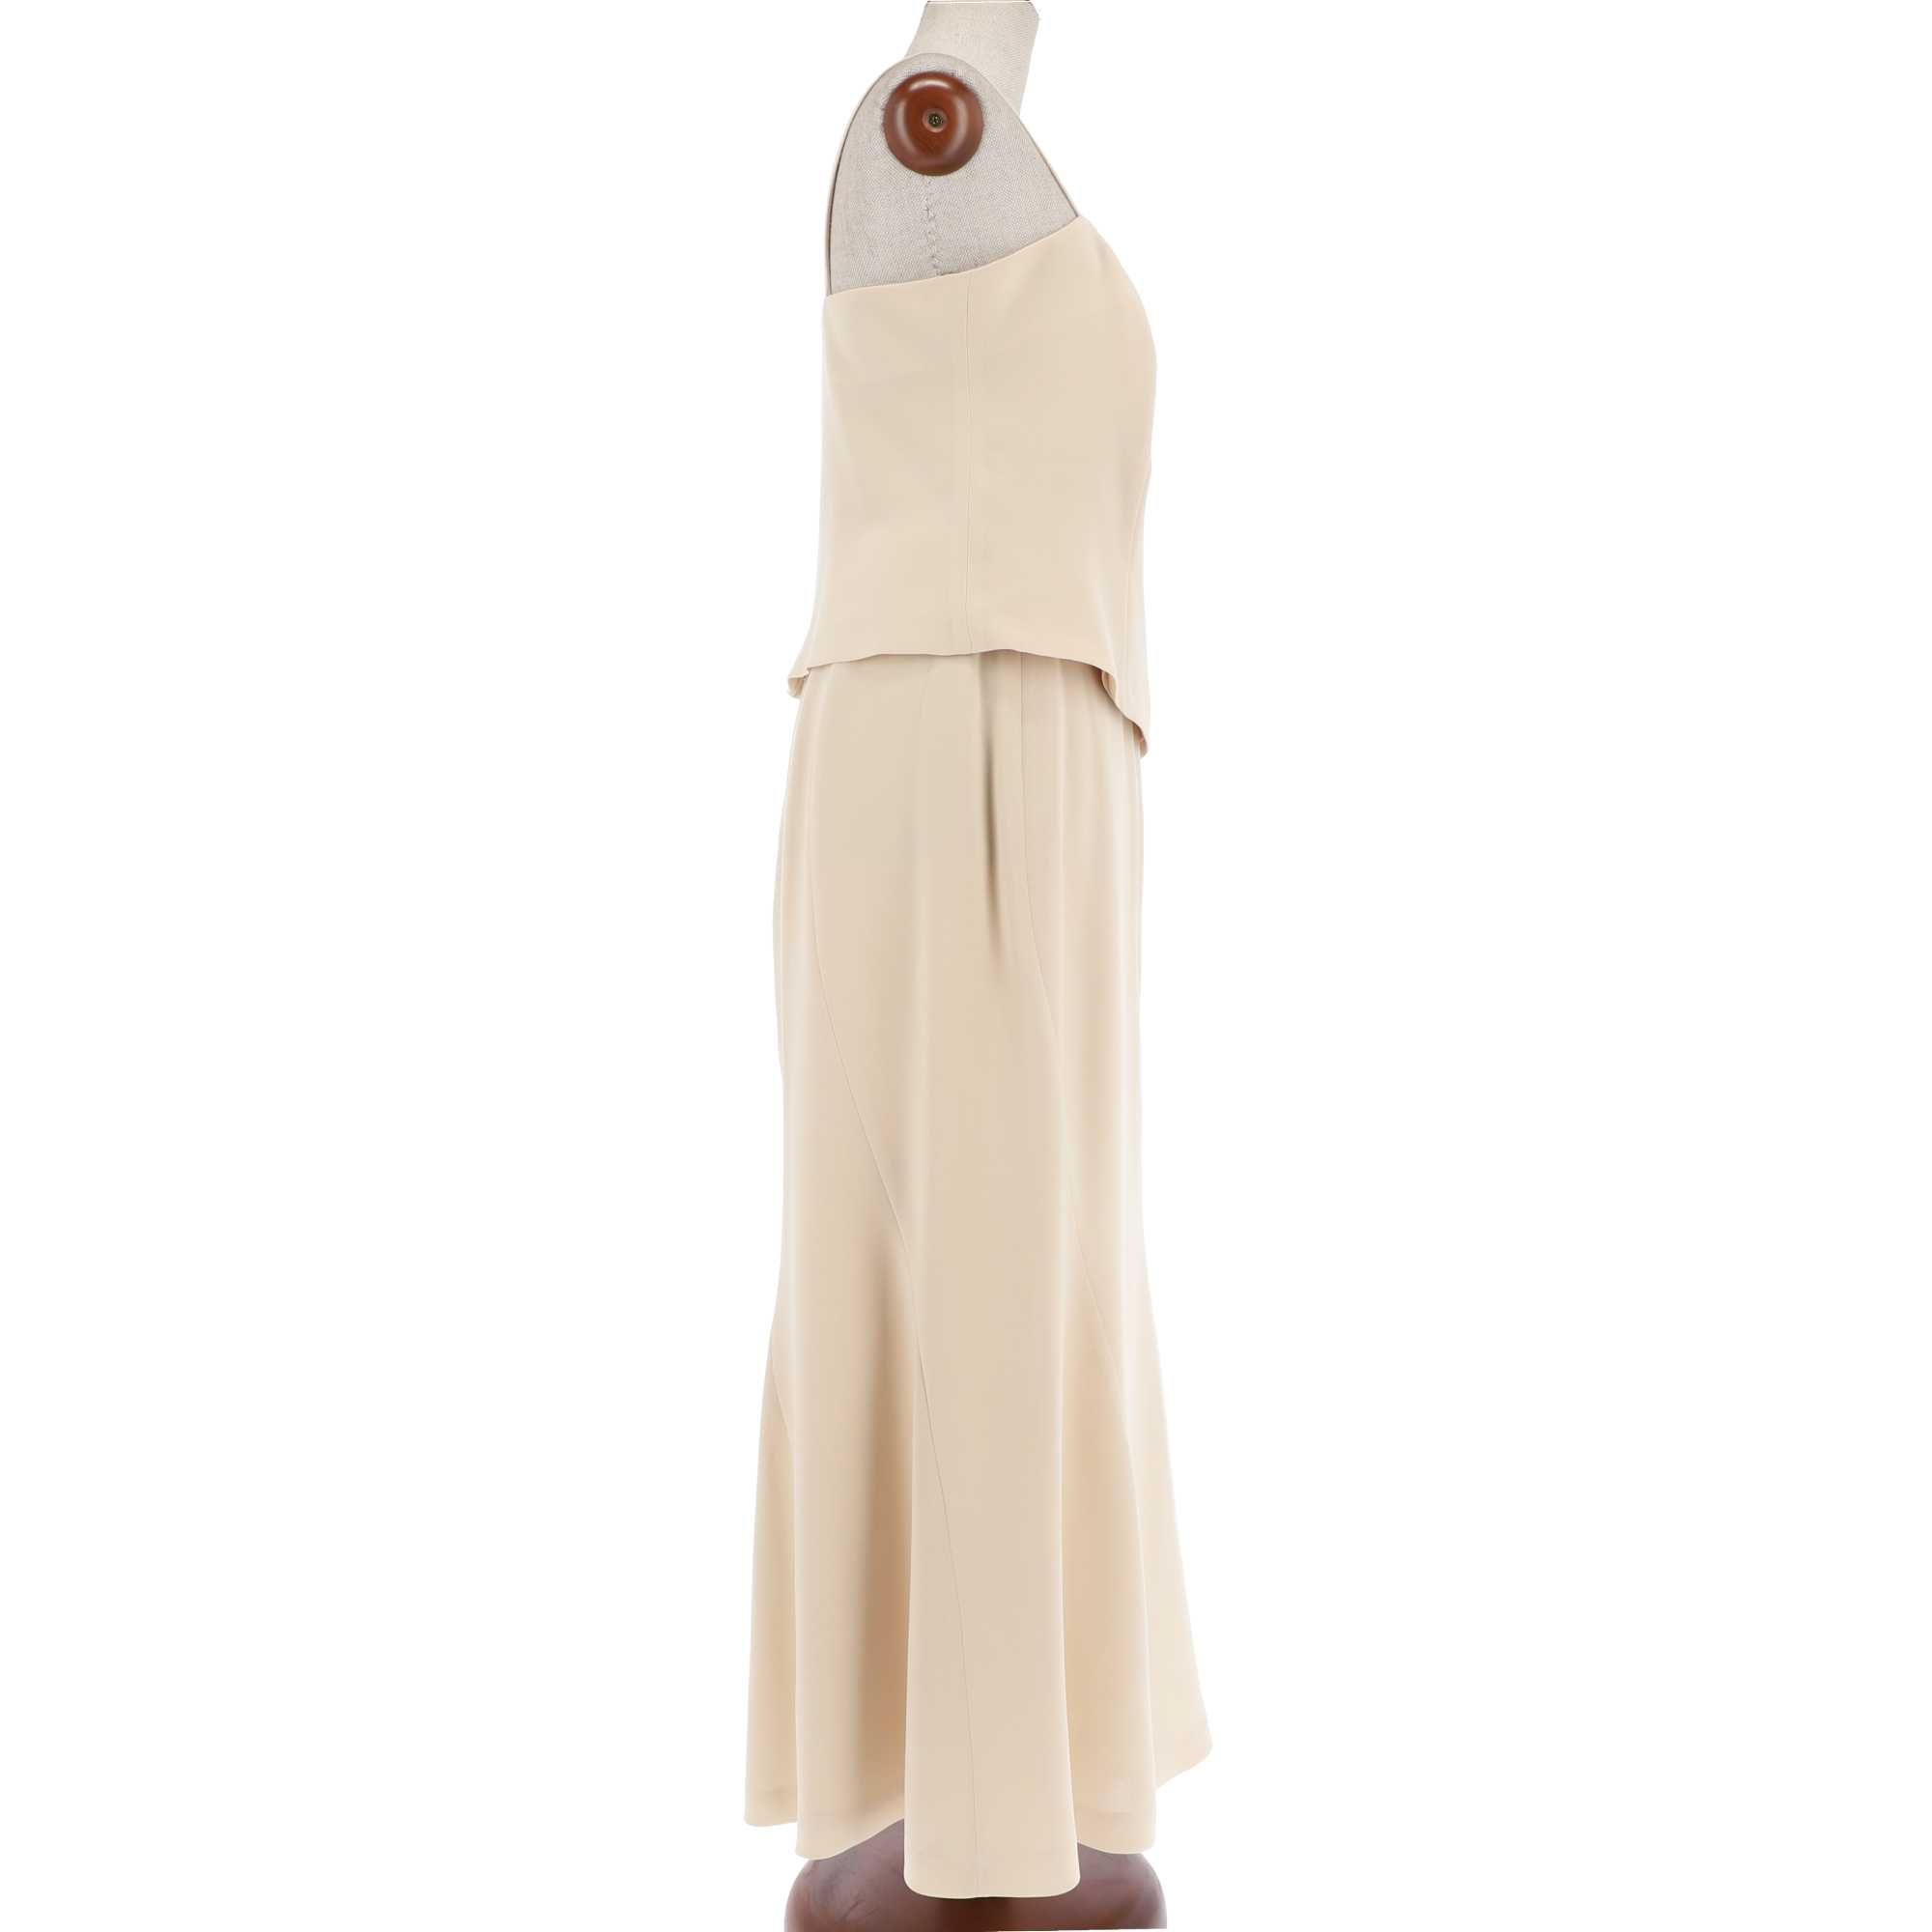 Beżowy komplet bluzki i spódnicy marki GaPa Fashion, rozmiar 46